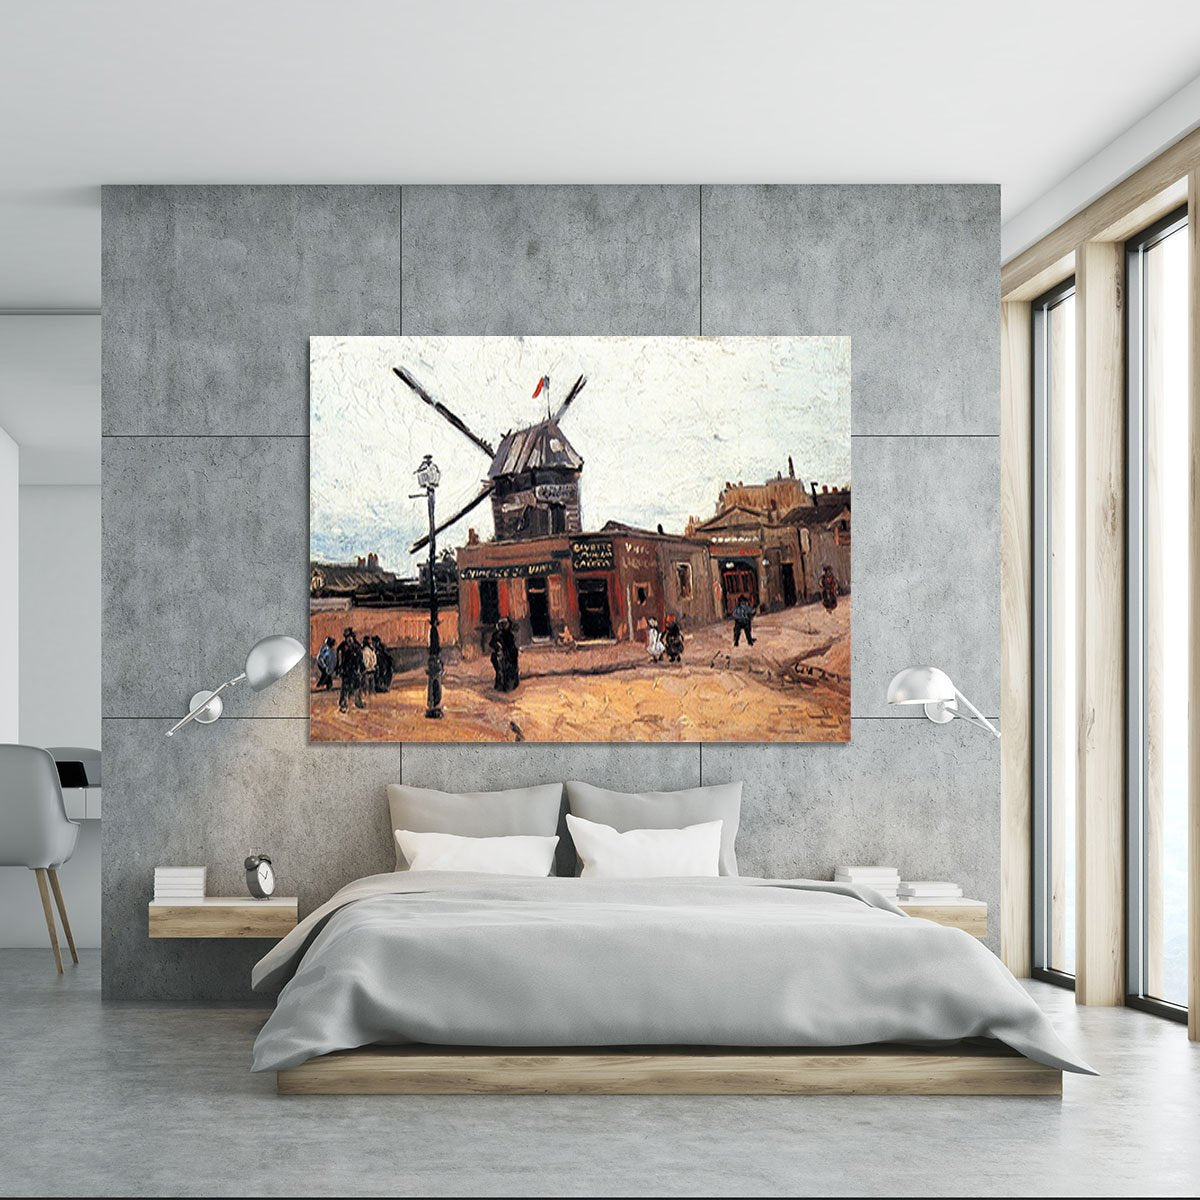 Le Moulin de la Galette 3 by Van Gogh Canvas Print or Poster